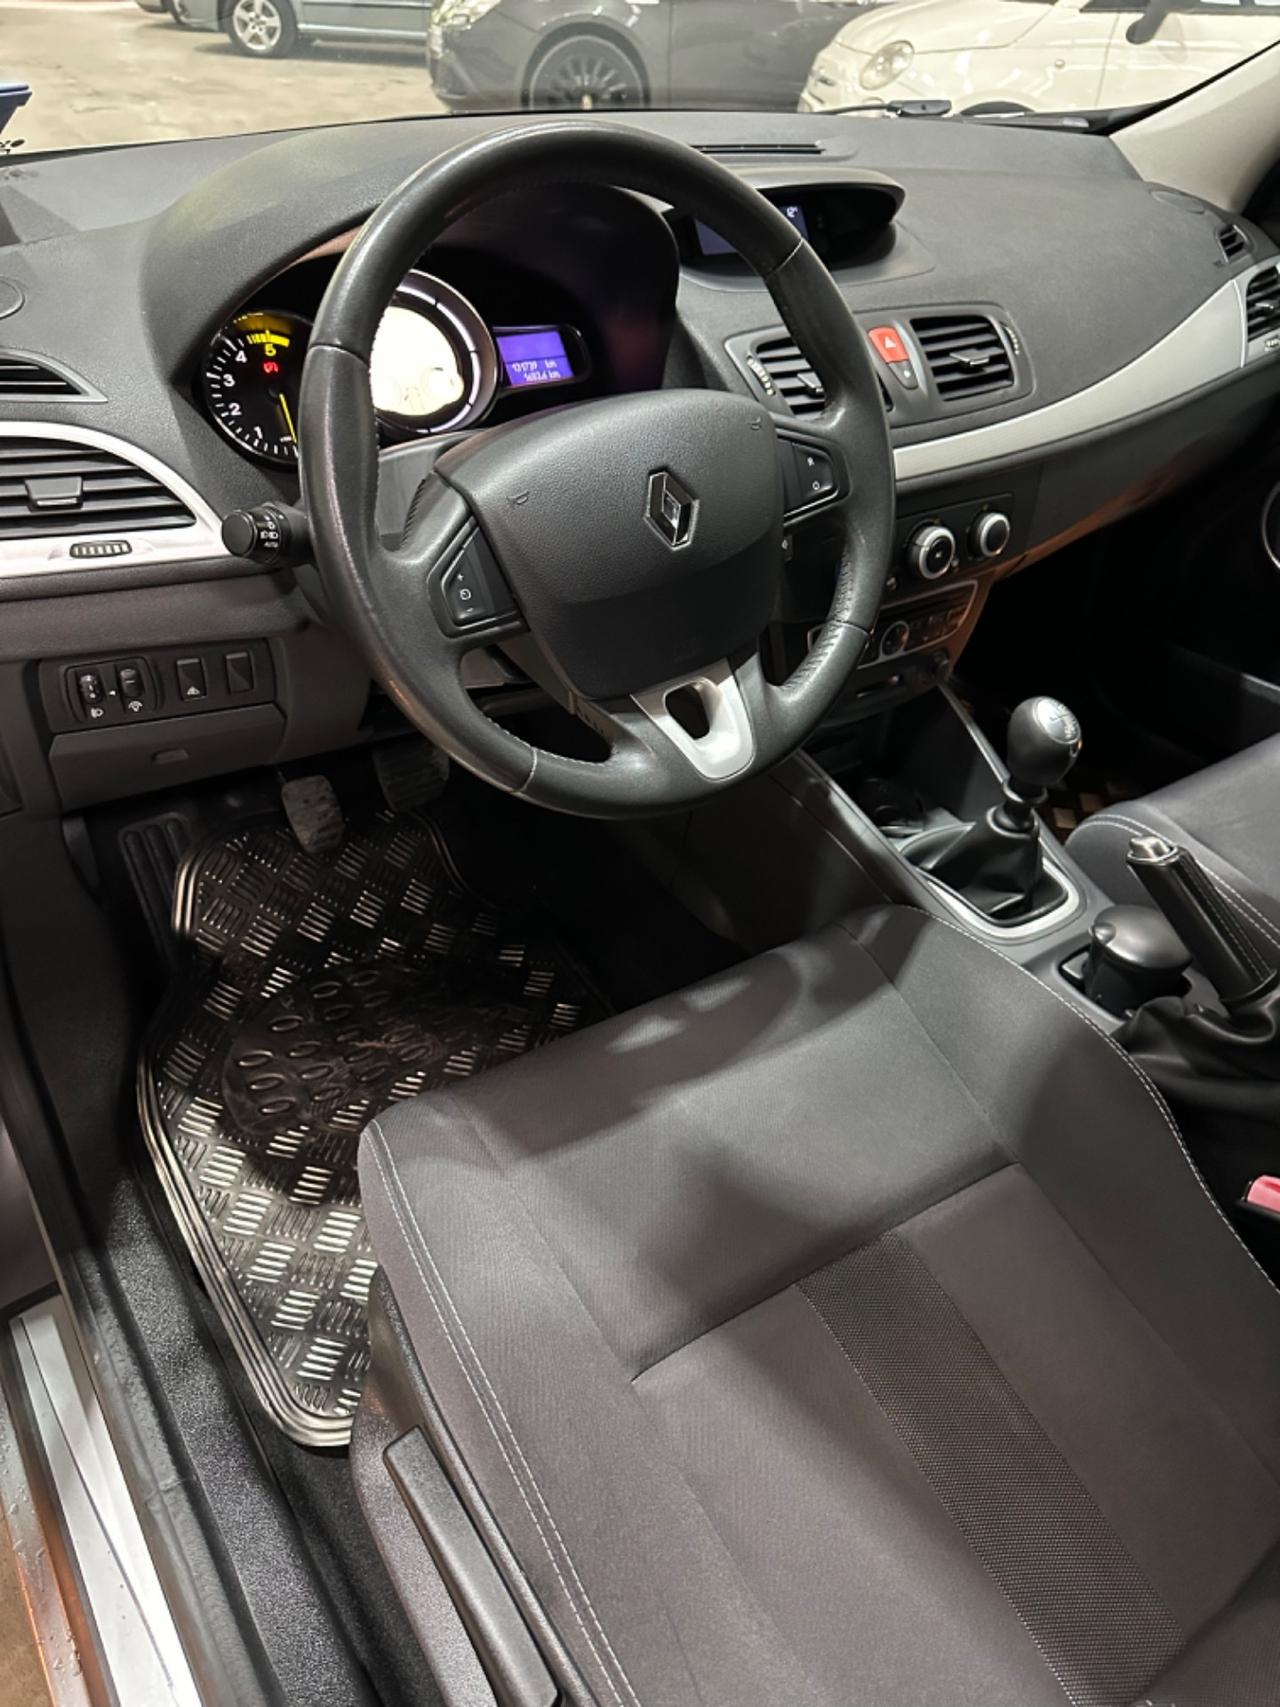 Renault MÈGANE 1.5 dCi 110CV DYNAMIQUE EU5 KMCERT UNICOPR